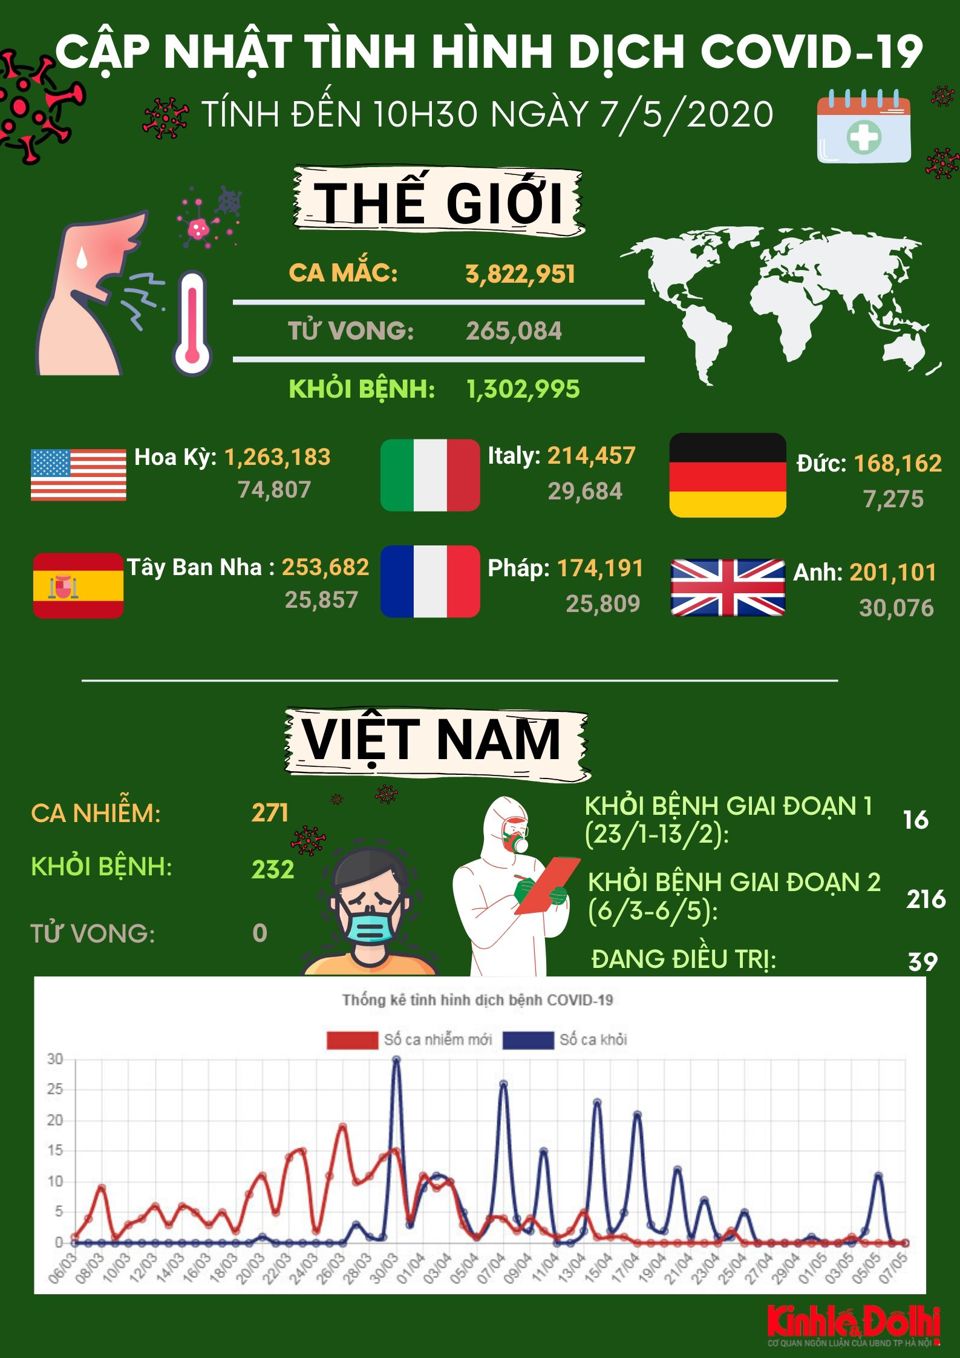 [Infographic] Dịch Covid-19 sáng 7/5: Hơn 3.8 triệu người trên toàn cầu mắc bệnh - Ảnh 1